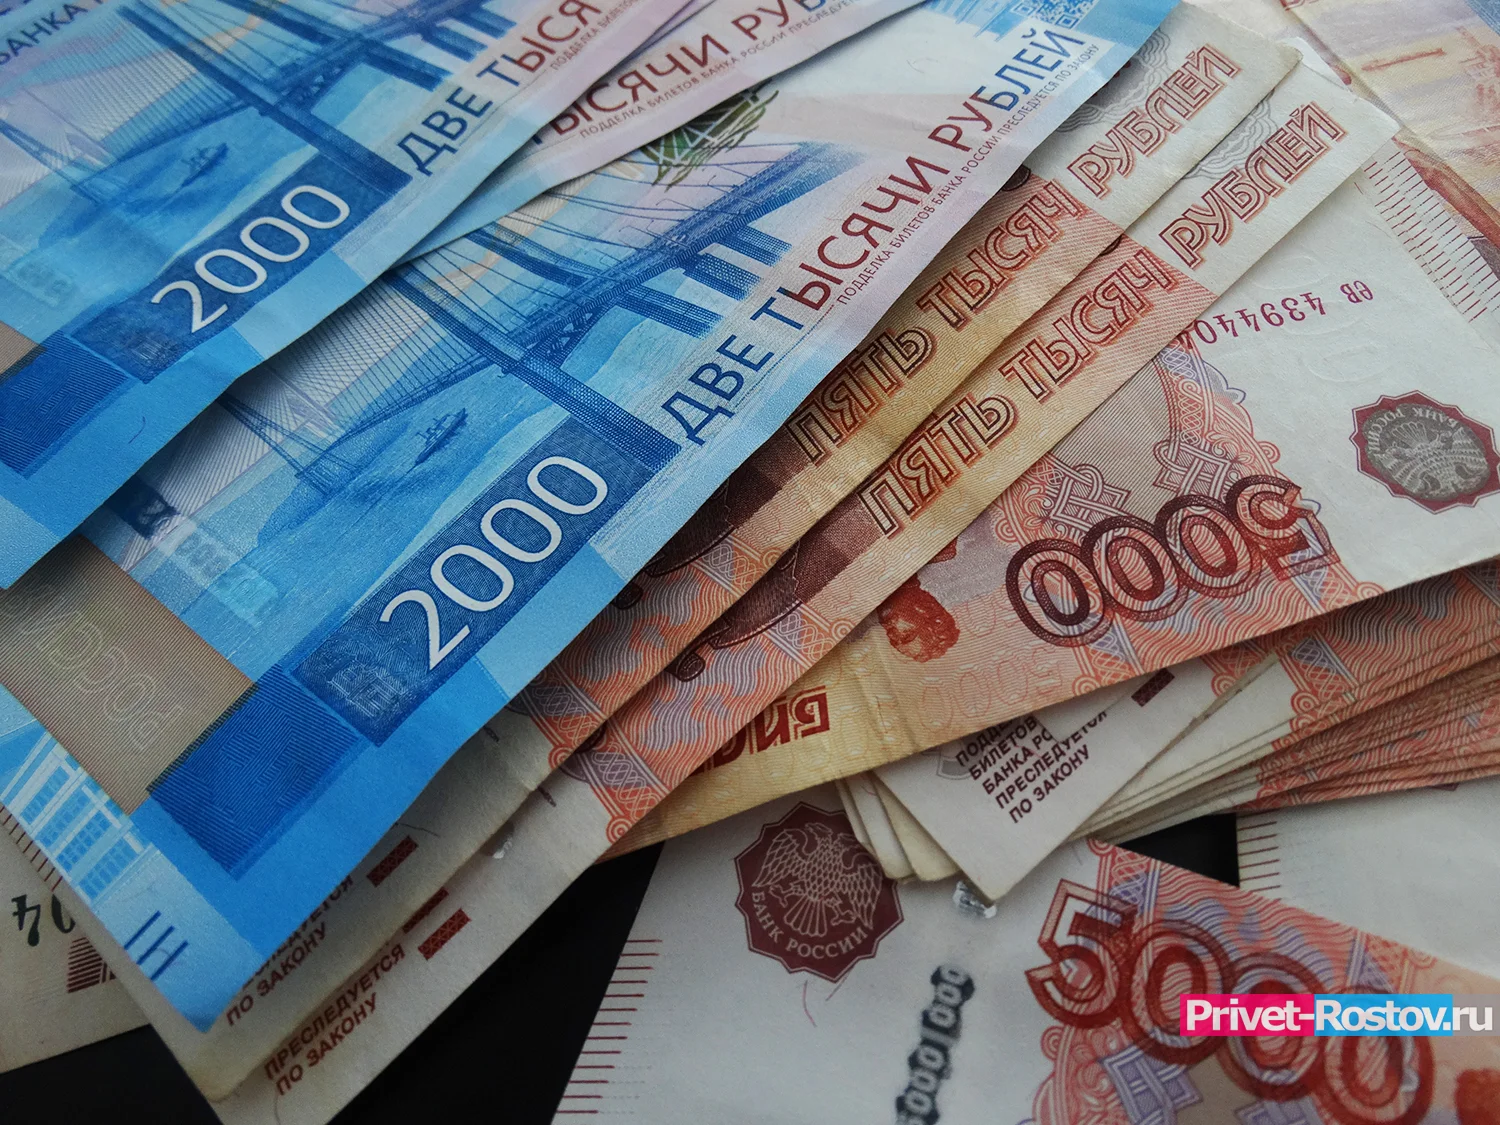 В Ростове-на-Дону начат розыск желающих работать за 185 тысяч рублей в месяц